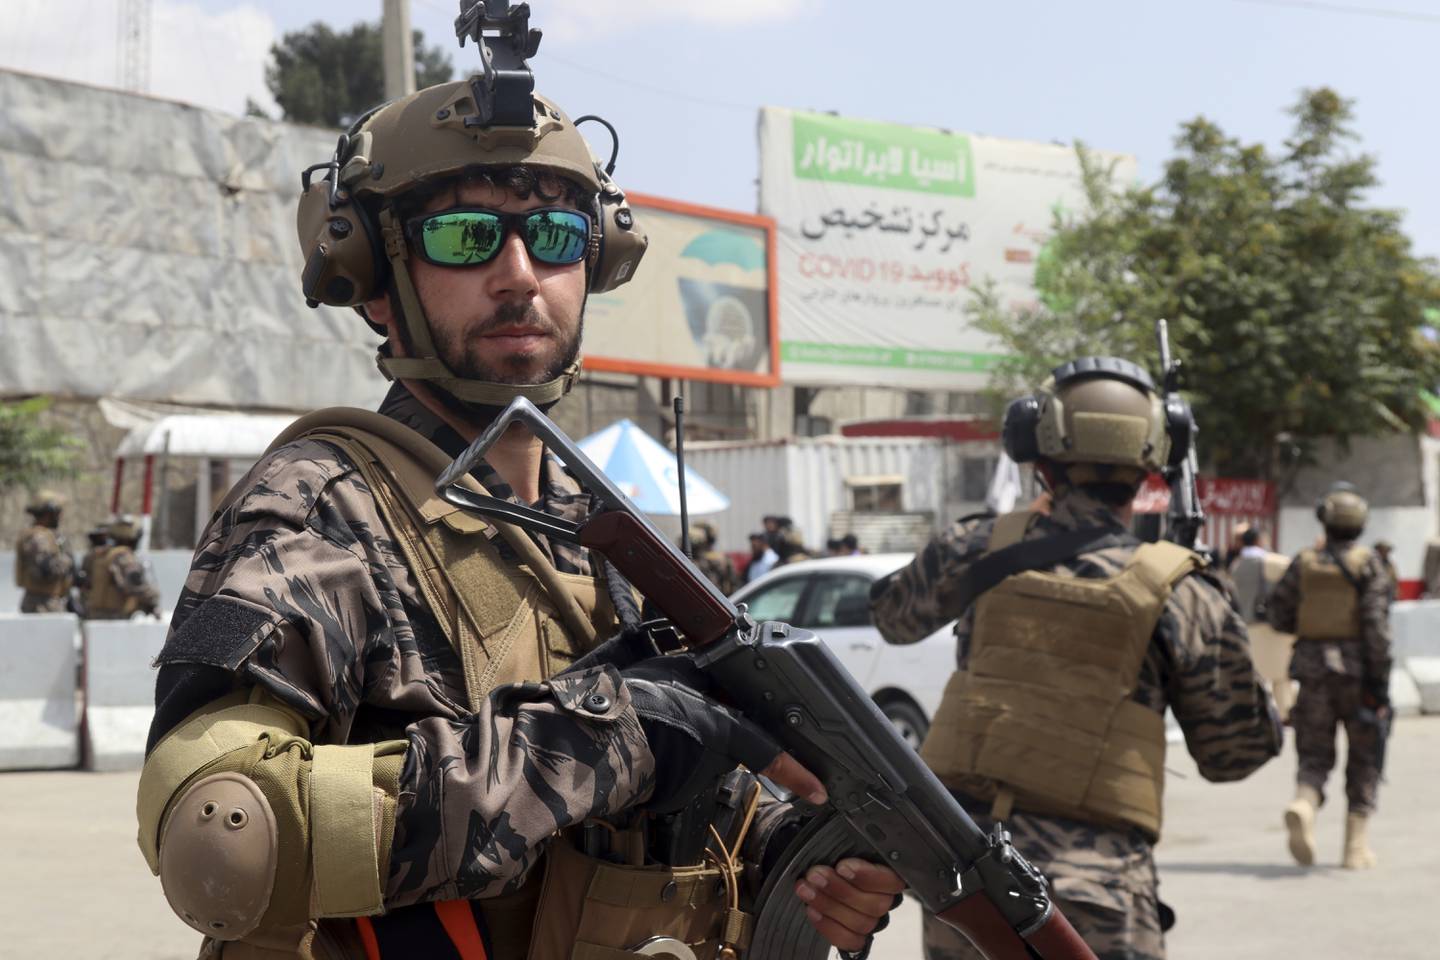 En Taliban-soldat på flyplassen i Kabul tirsdag, etter at de siste amerikanske soldatene hadde reist fra byen. En del av våpnene som USA overlot til de afghanske regjeringsstyrkene, er nå overtatt av Taliban. Amerikanerne valgte å ødelegge luftfartøyer og våpen for store verdier før de forlot Afghanistan. Foto: Khwaja Tawfiq Sediqi / AP / NTB